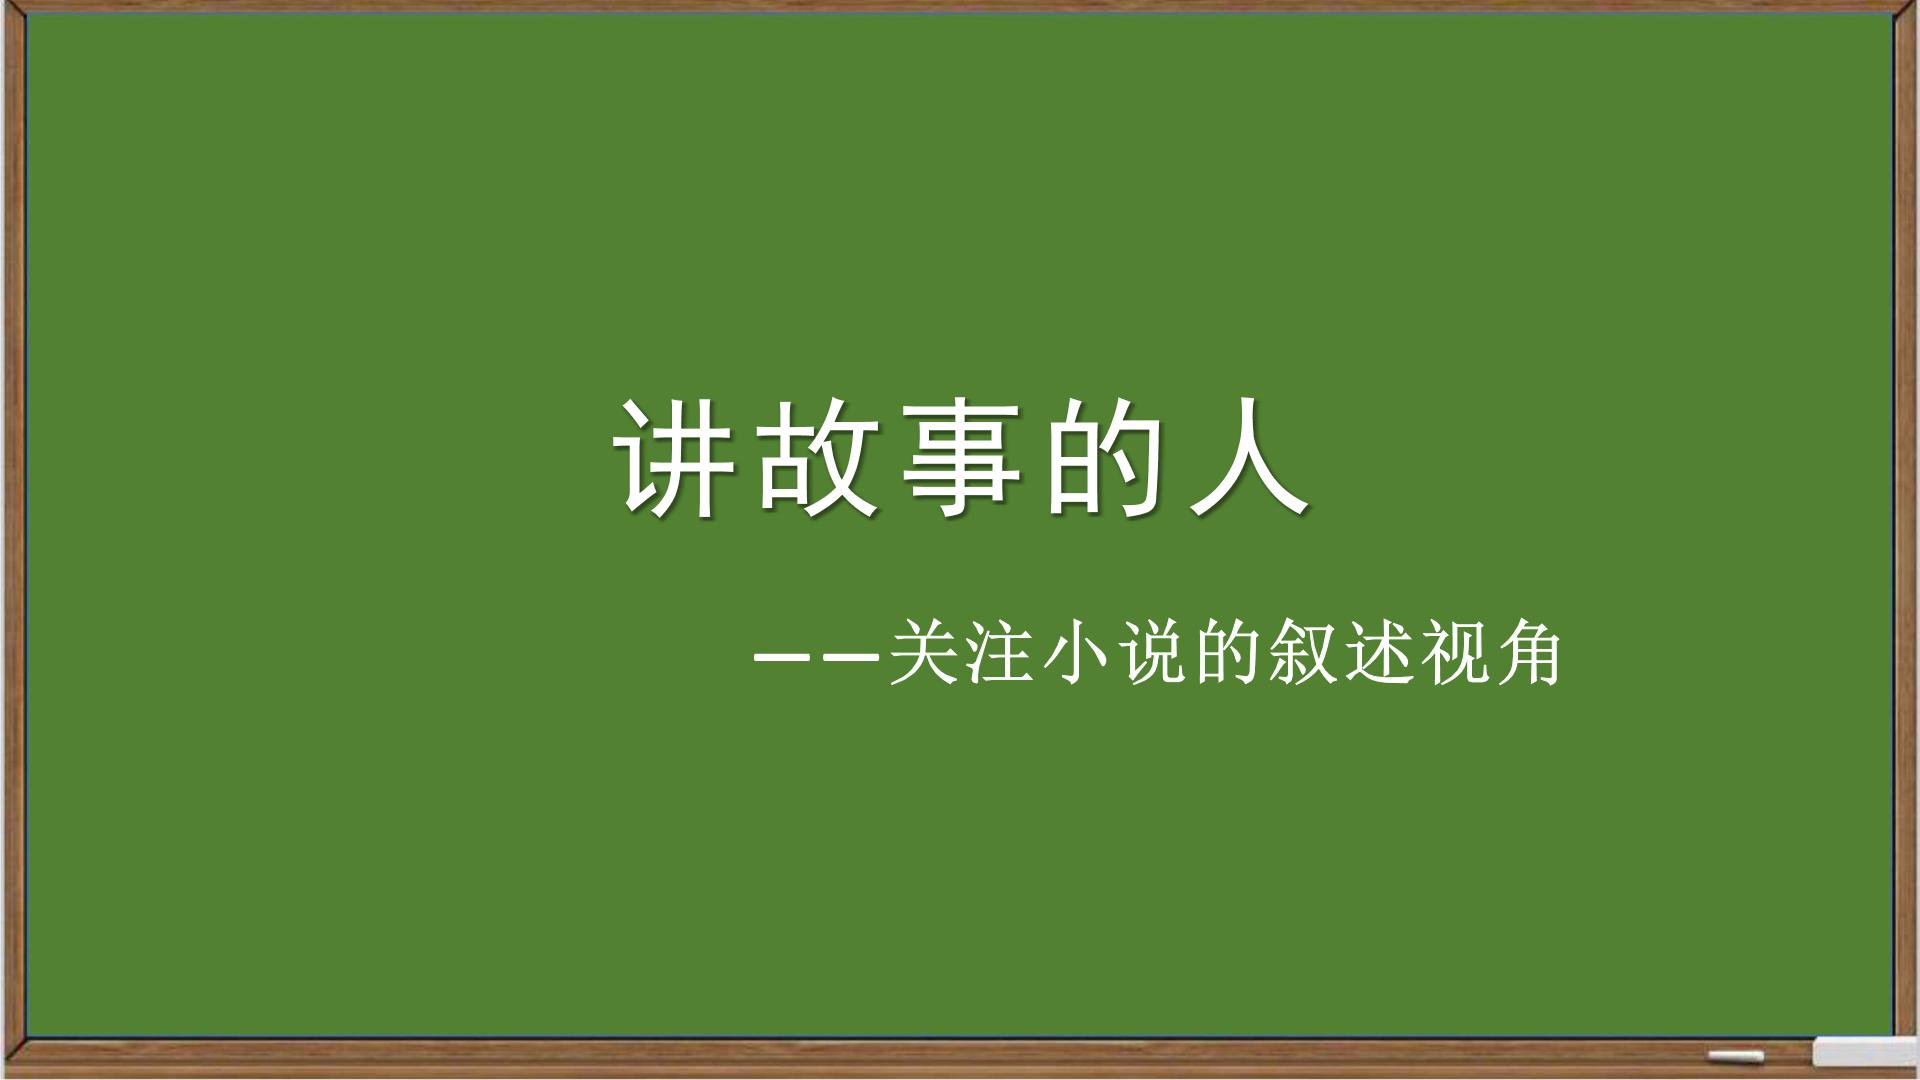 初中语文+九年级+小说中的叙述视角 课件